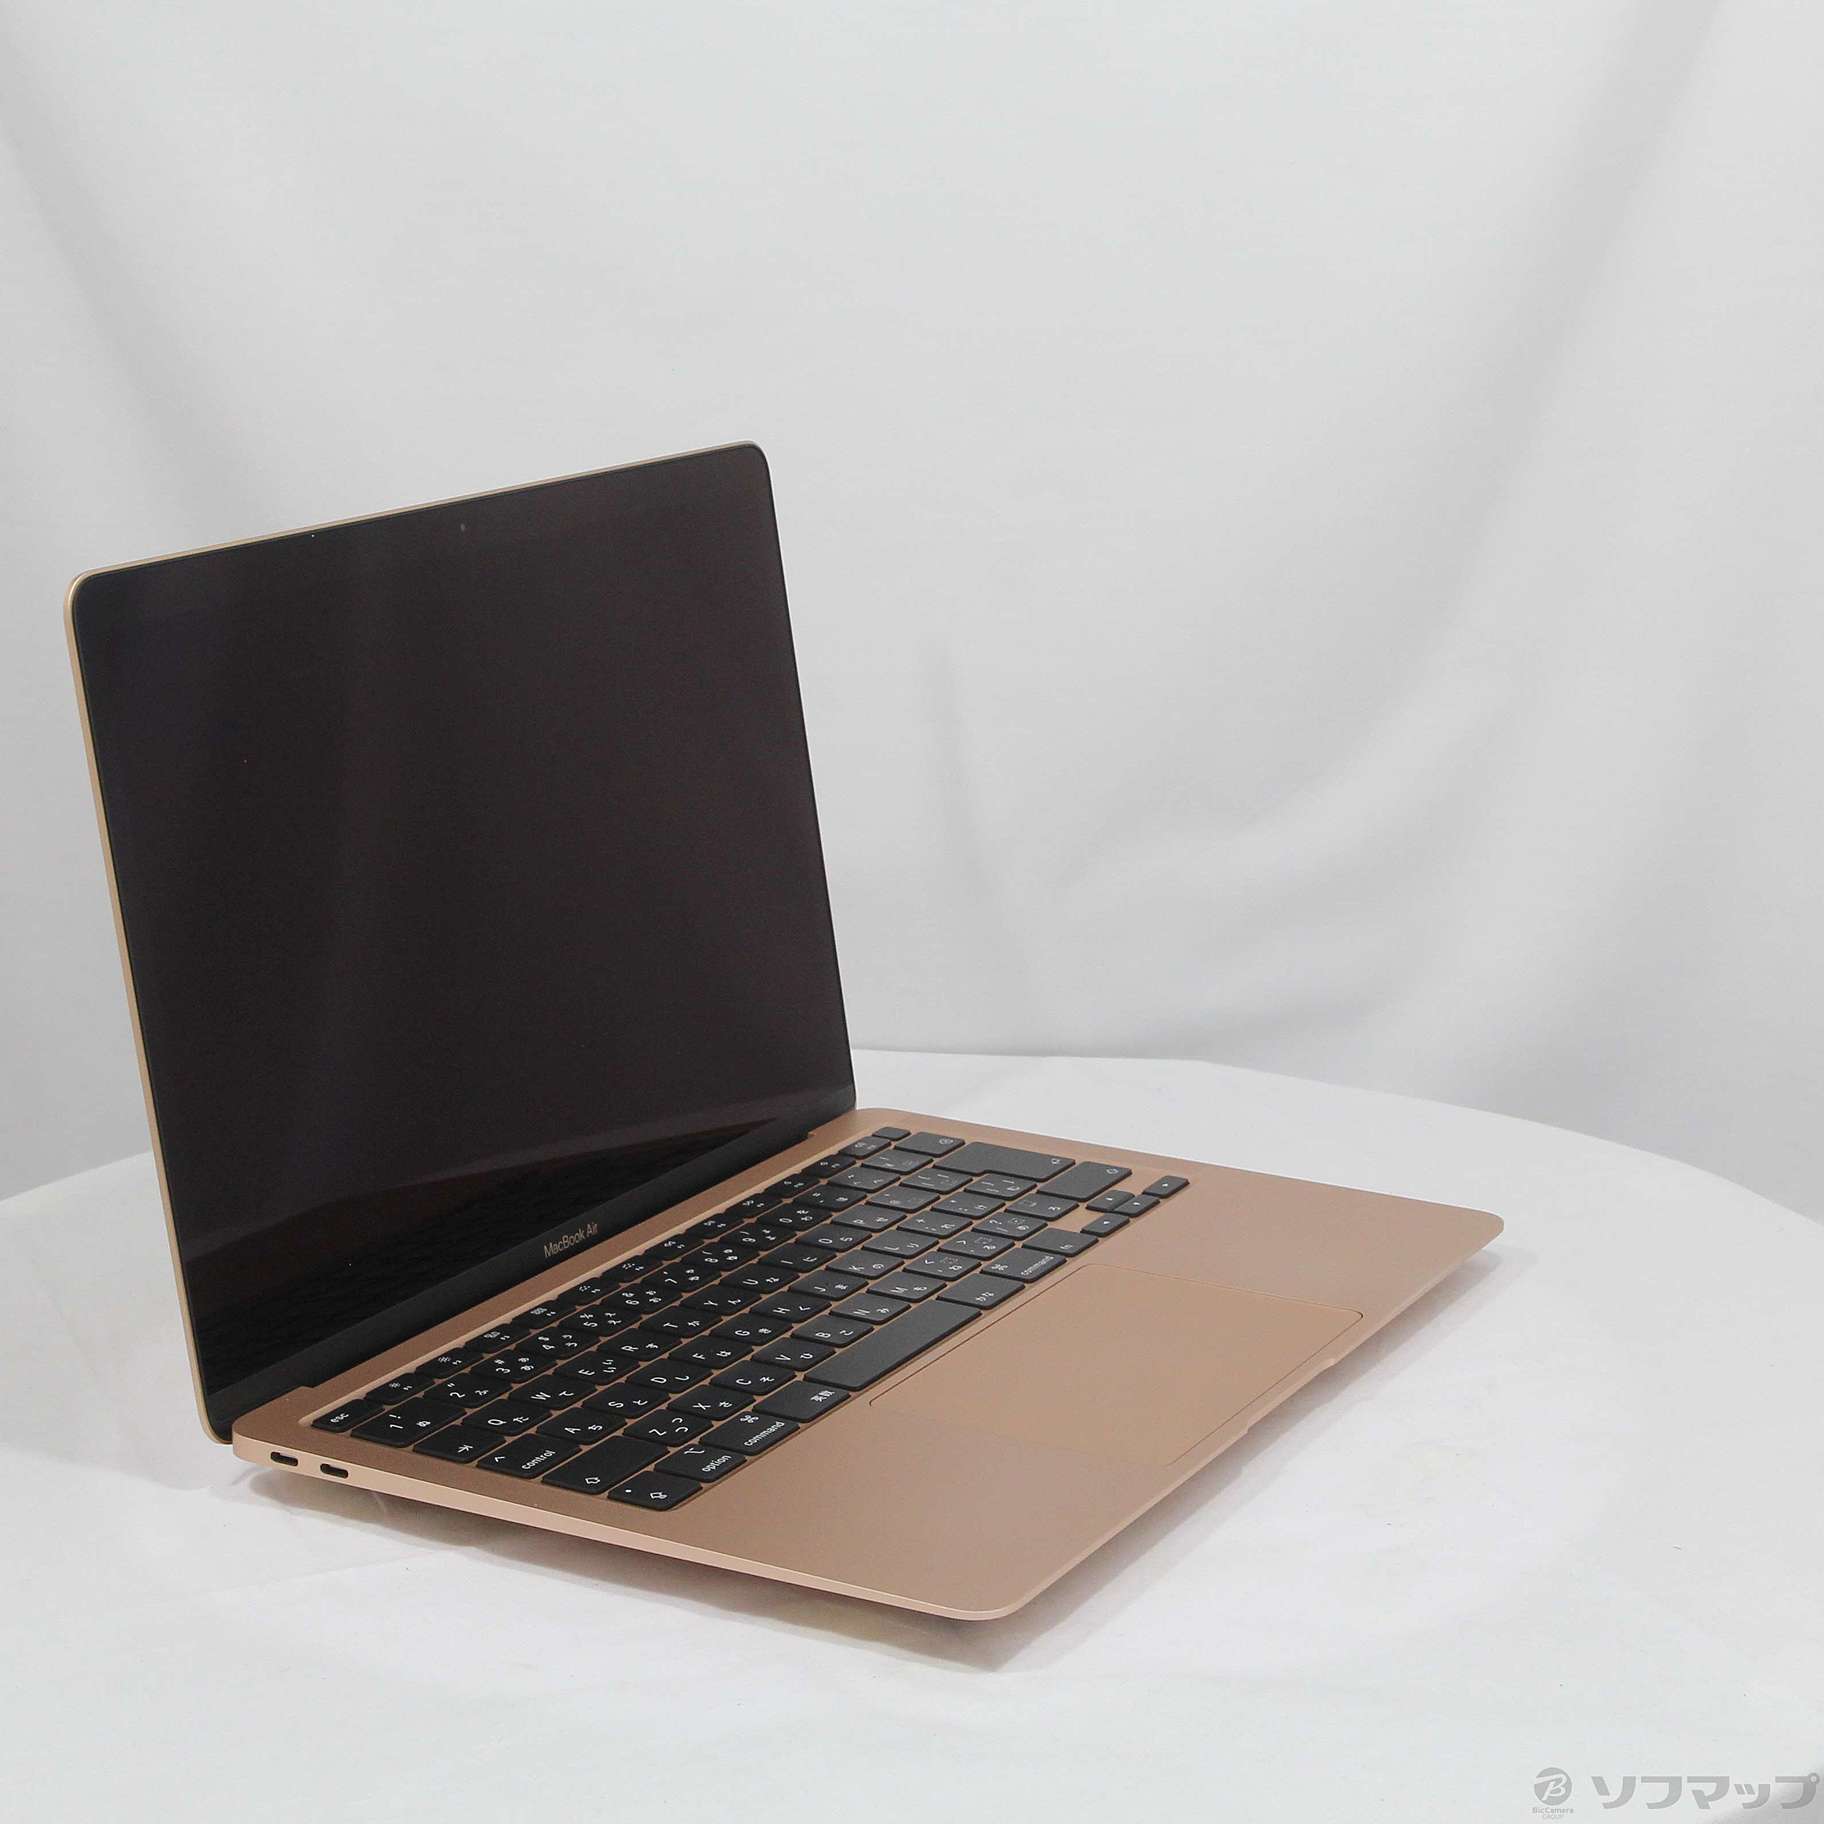 MacBook Air (2020) ゴールド MWTL2J/A